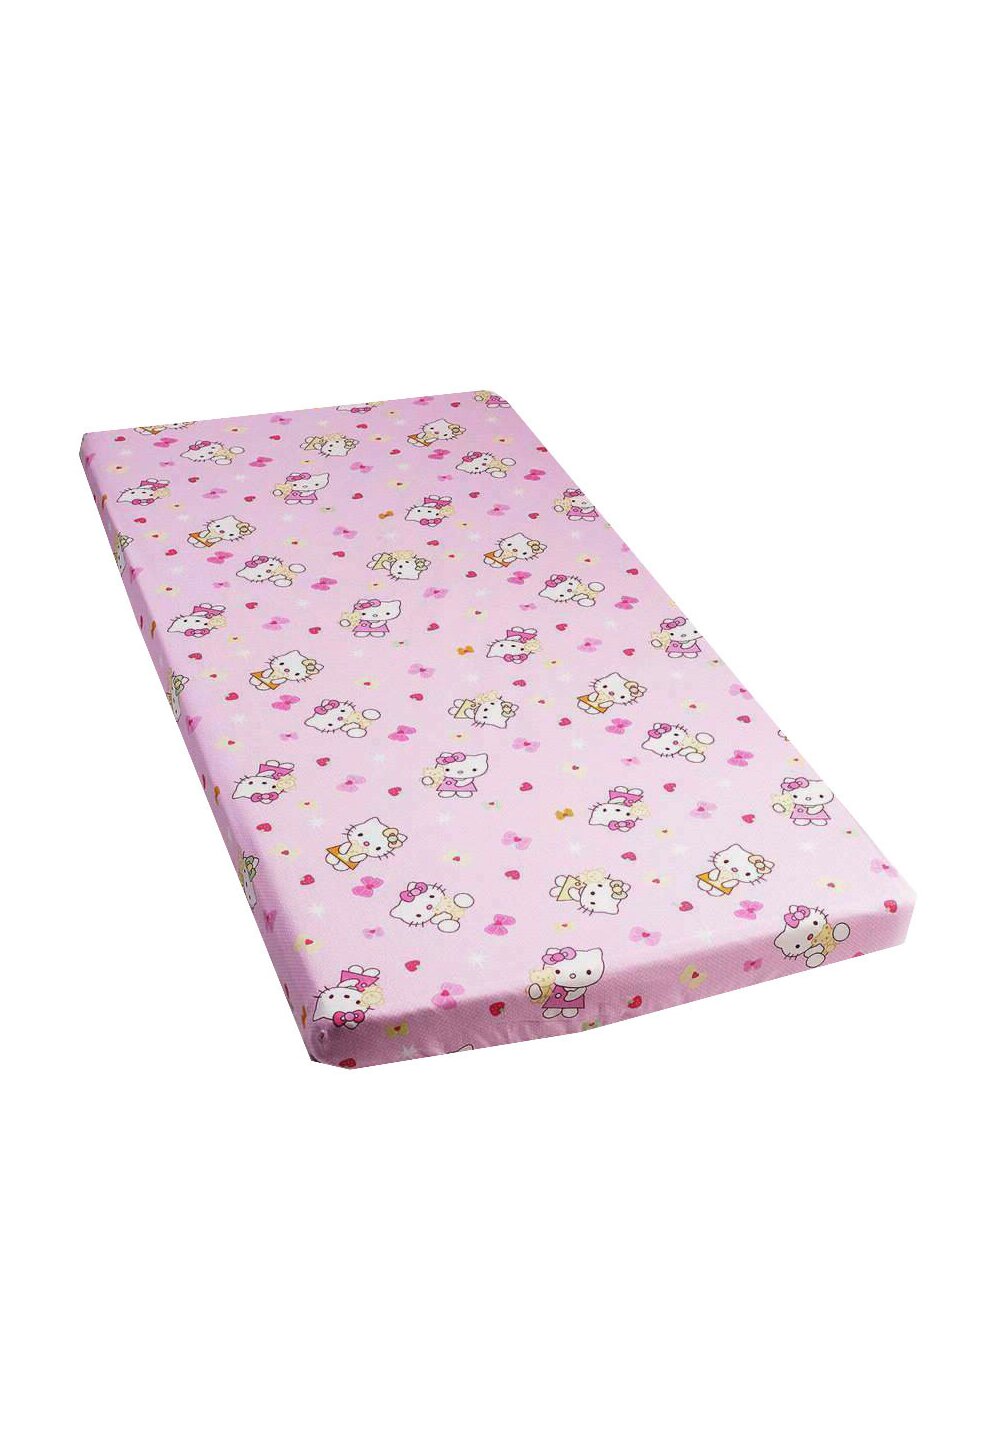 Cearceaf Prichindel, patut 120×60 cm, Hello Kitty, roz deschis Prichindel